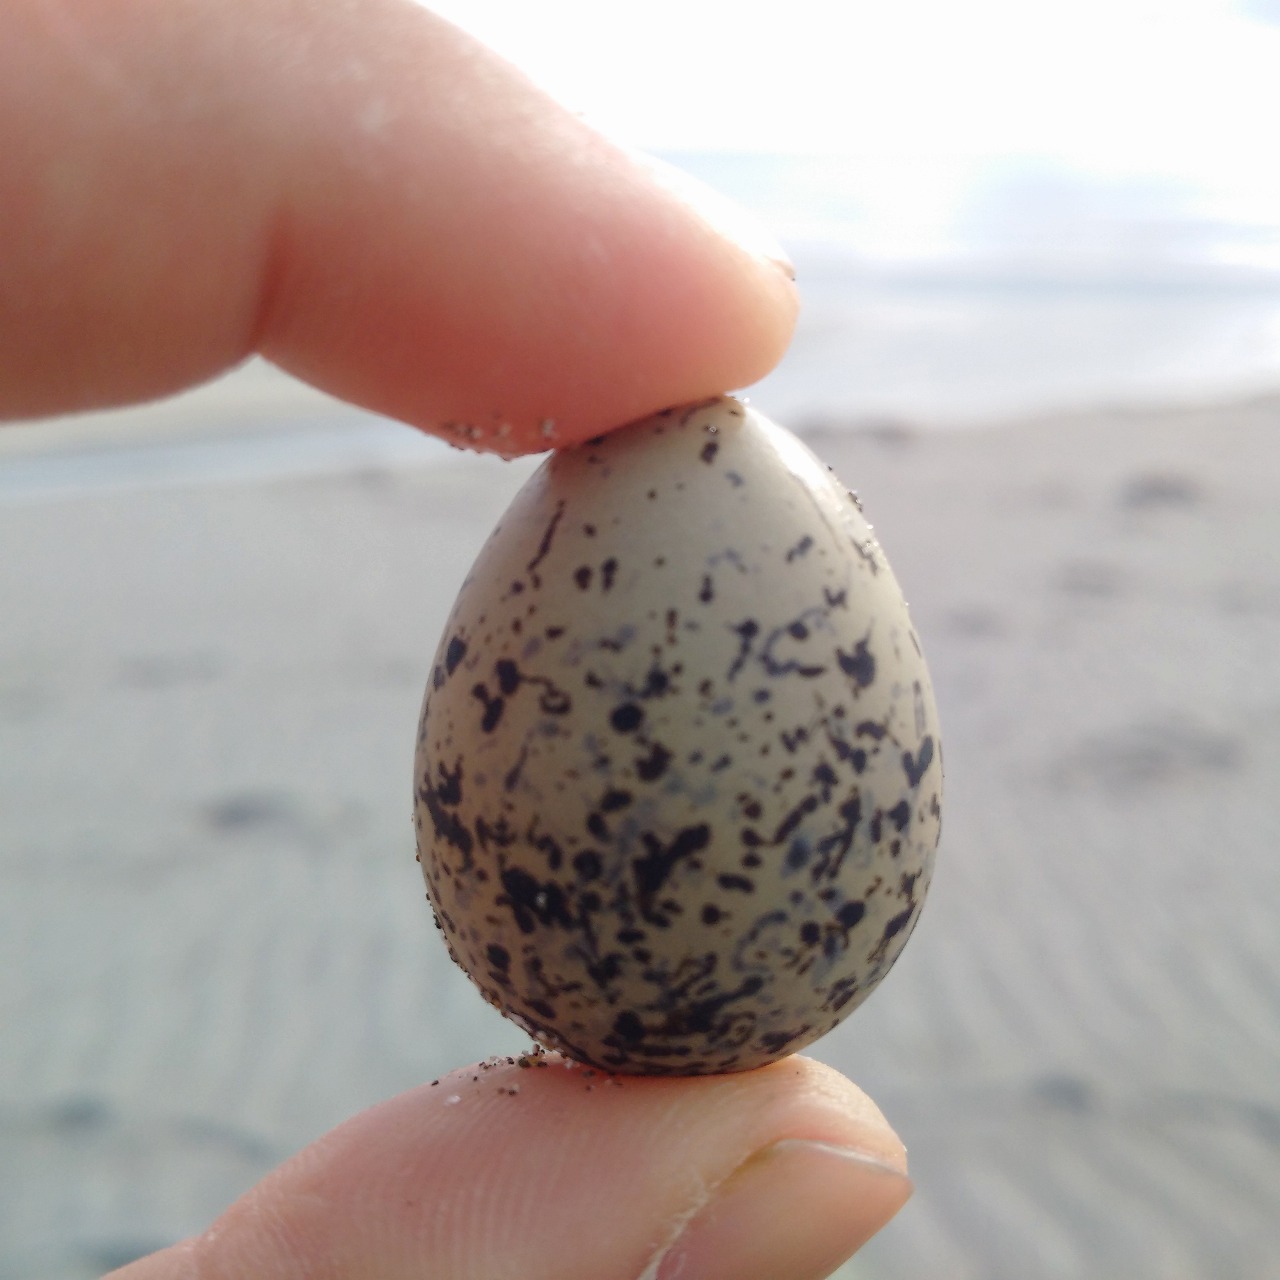 砂浜の鳥の卵はおじさんの仕業ではないっぽい